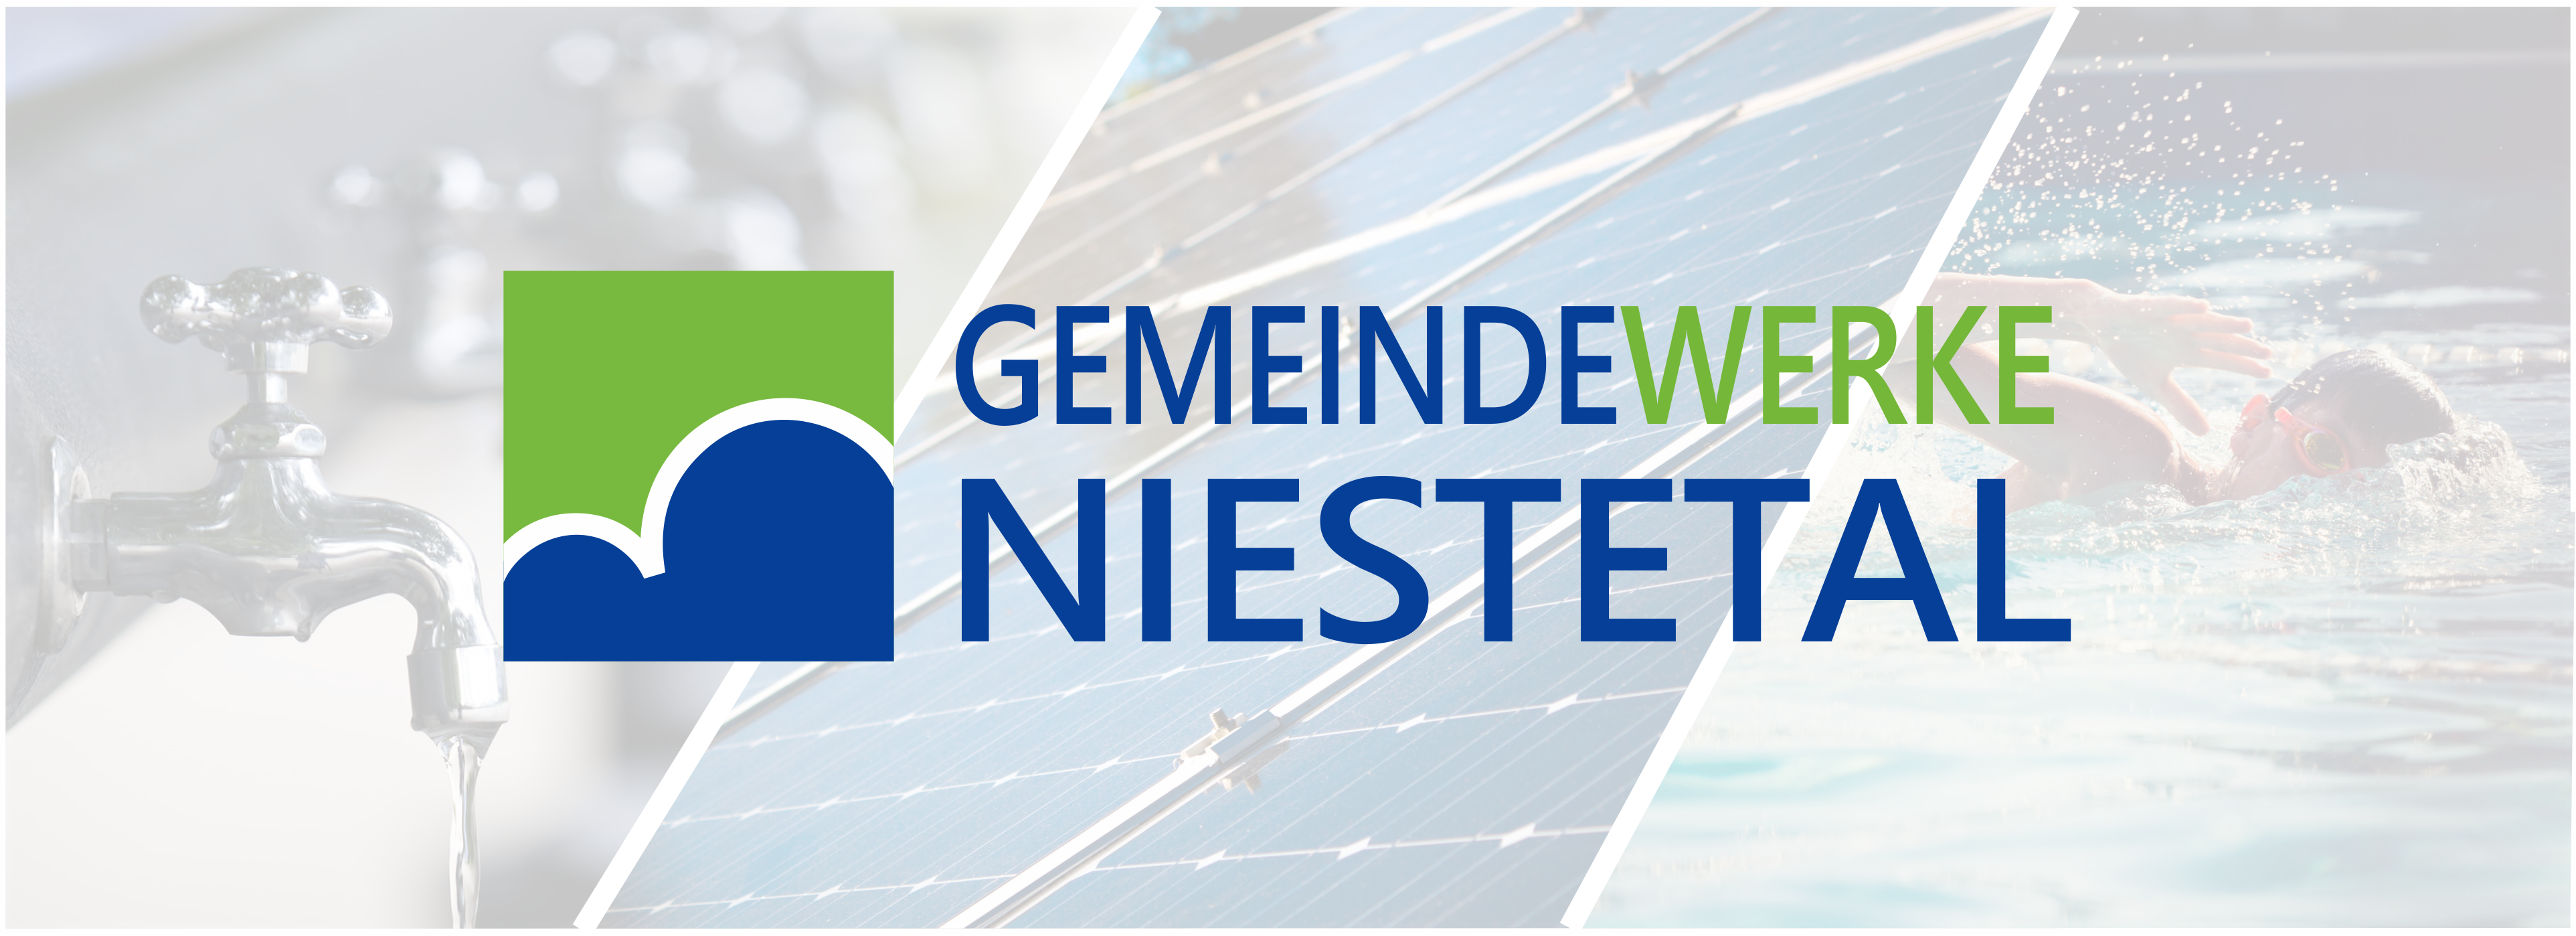 Das Logo der Gemeindewerke Niestetal mit Bildern zu den Themen Wasser, Strom, Schwimmbad.